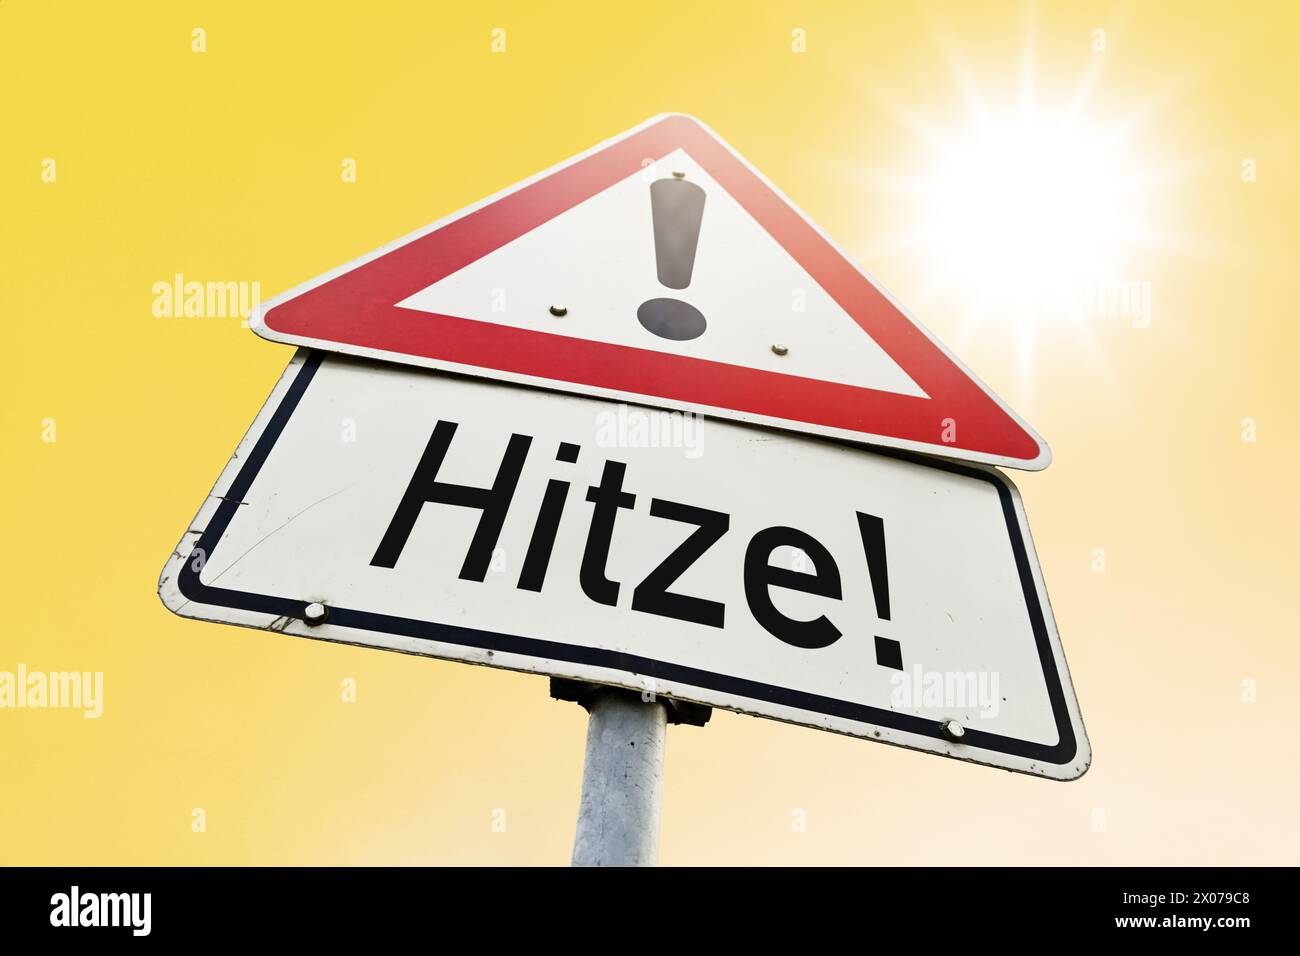 Heat Hazard Sign, Photomontage Stock Photo